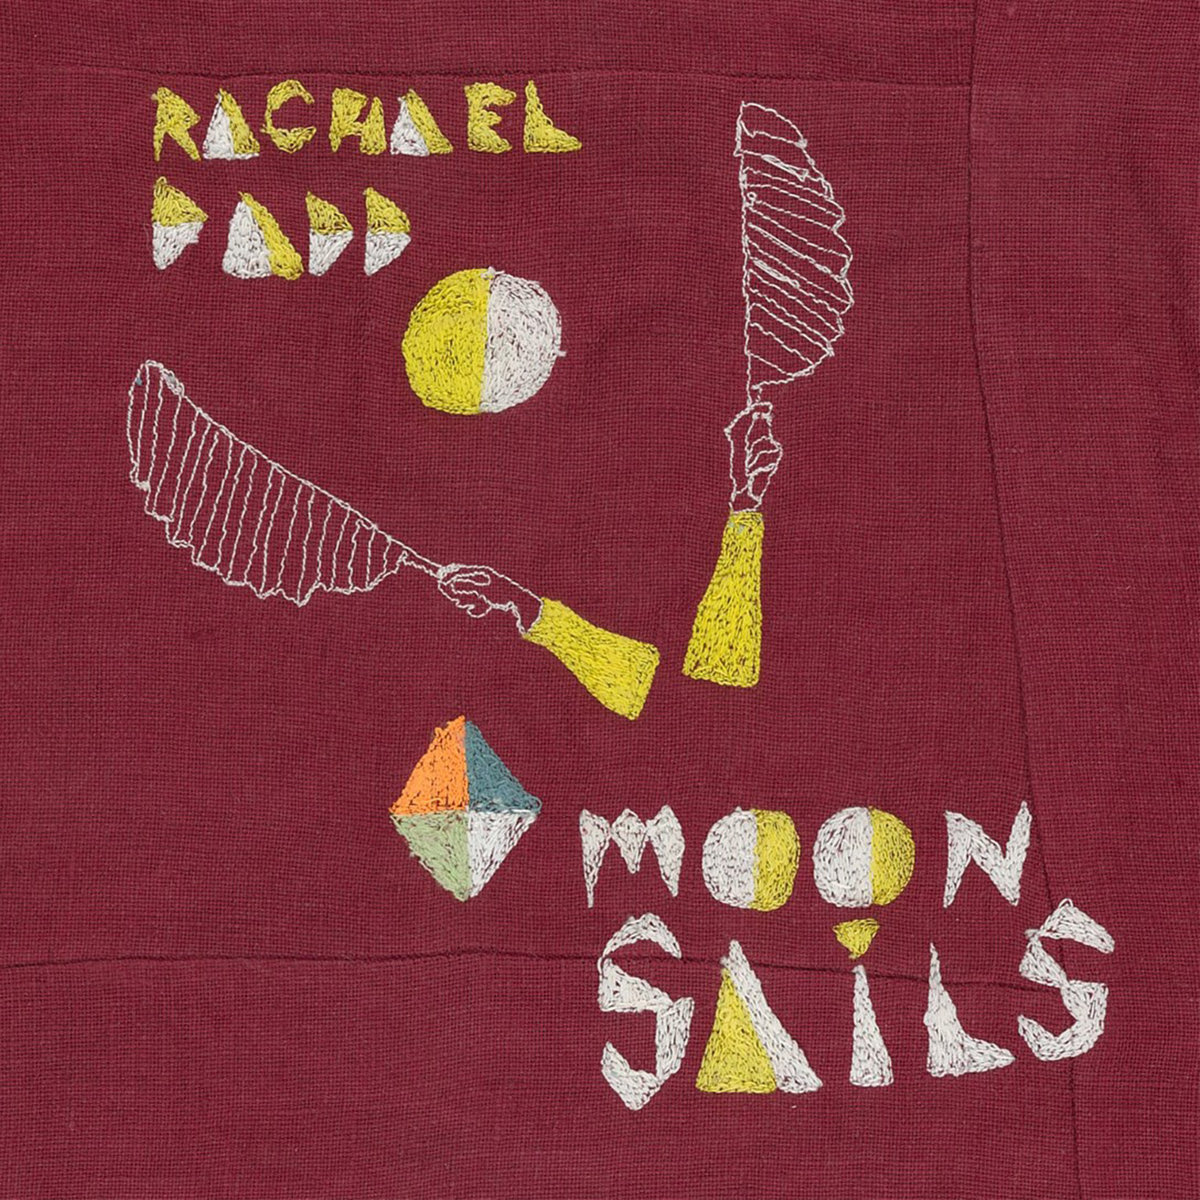 RACHAEL DADD – MOON SAILS